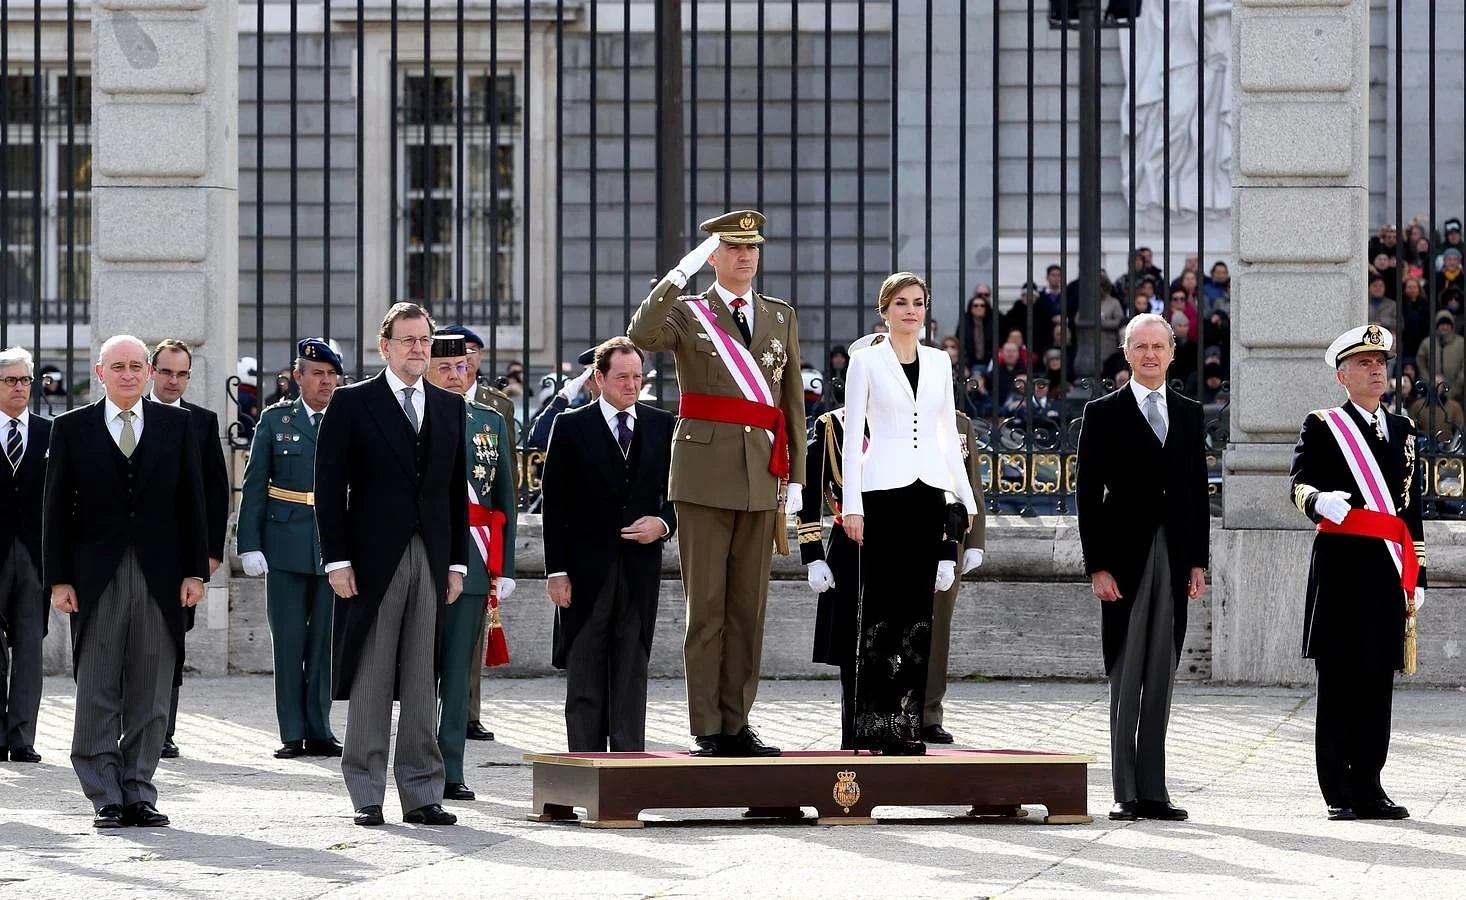 Felipe VI y Letizia han presidido la celebración de la Pascua Militar en el Palacio Real. Los ministros Fernández Díaz (Interior) y Morenés (Defensa) acompañan a los Reyes junto al presidente del Gobierno en funciones, Mariano Rajoy